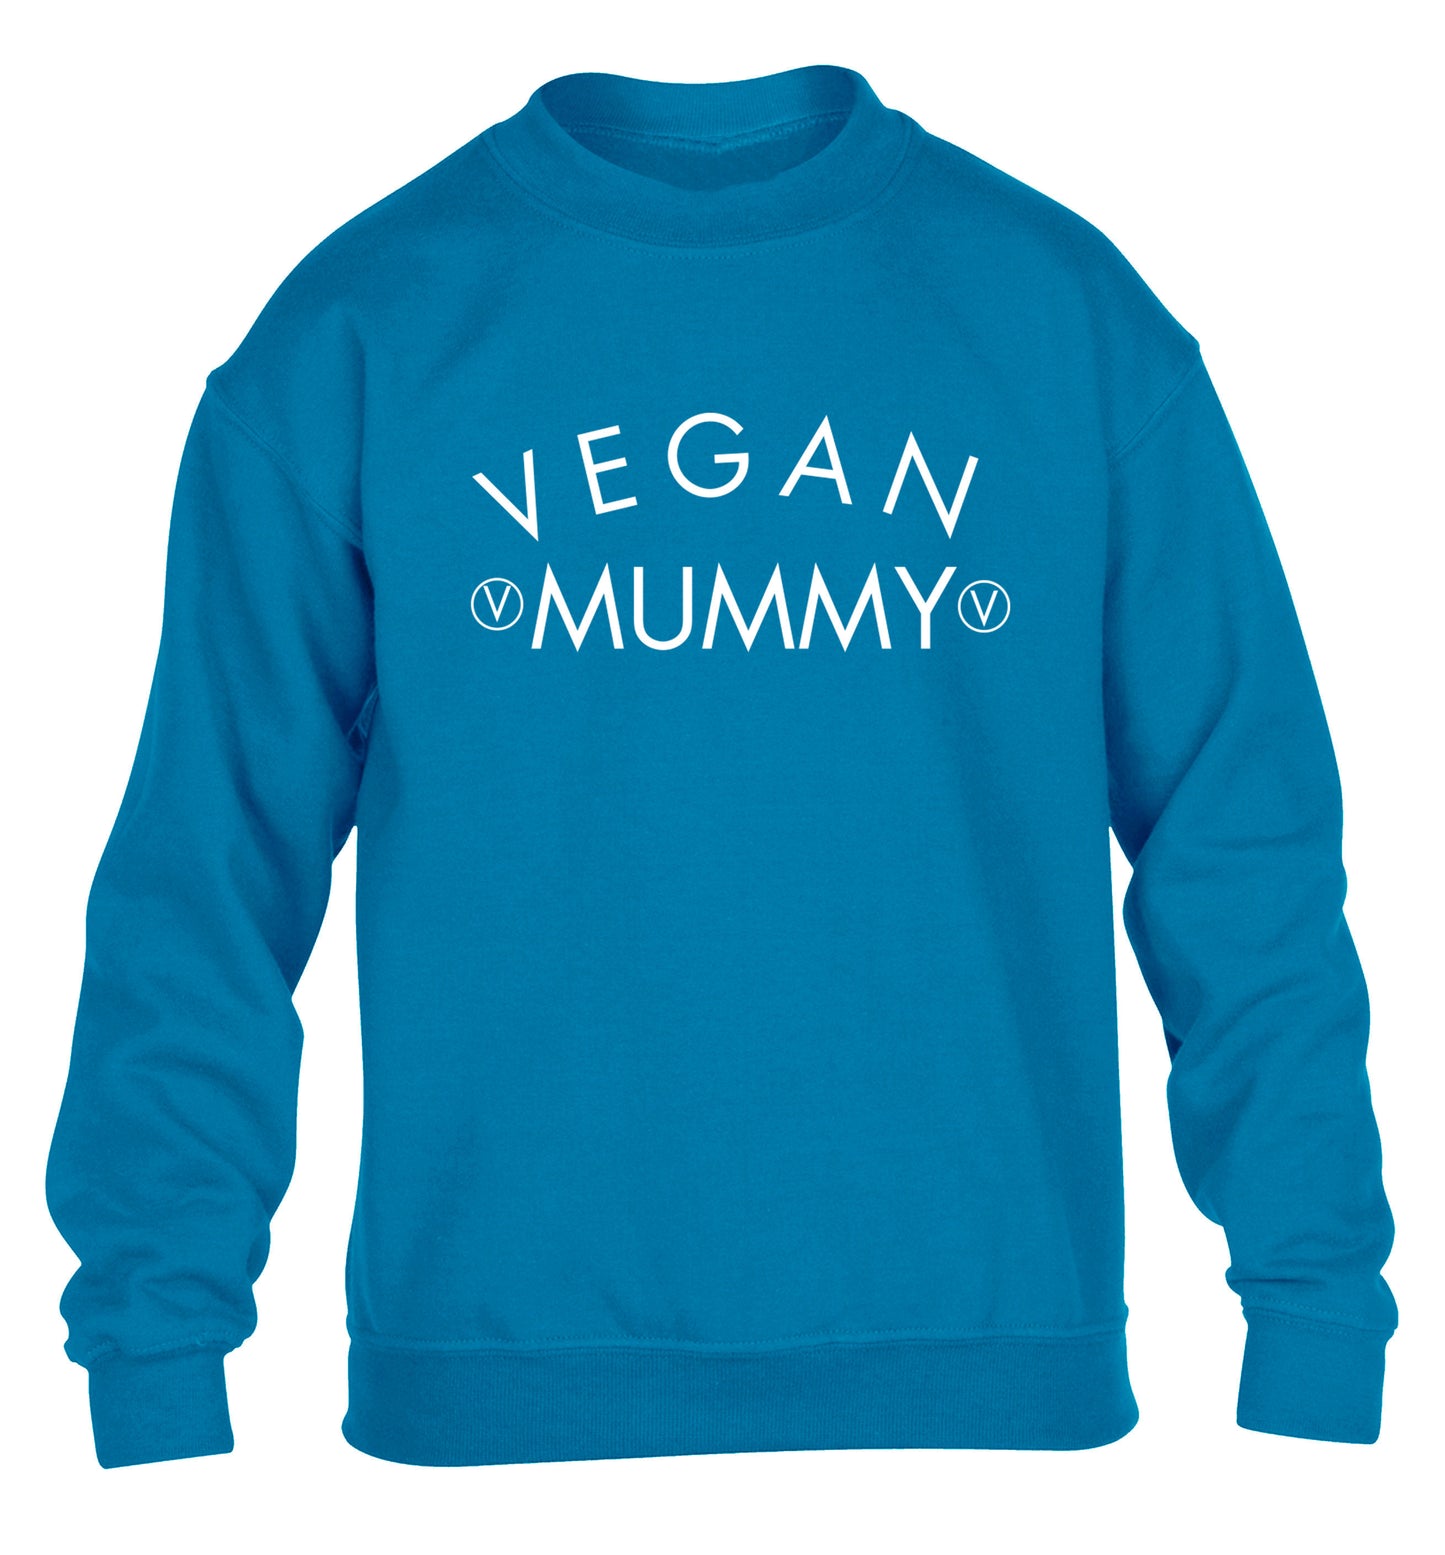 Vegan mummy children's blue sweater 12-14 Years